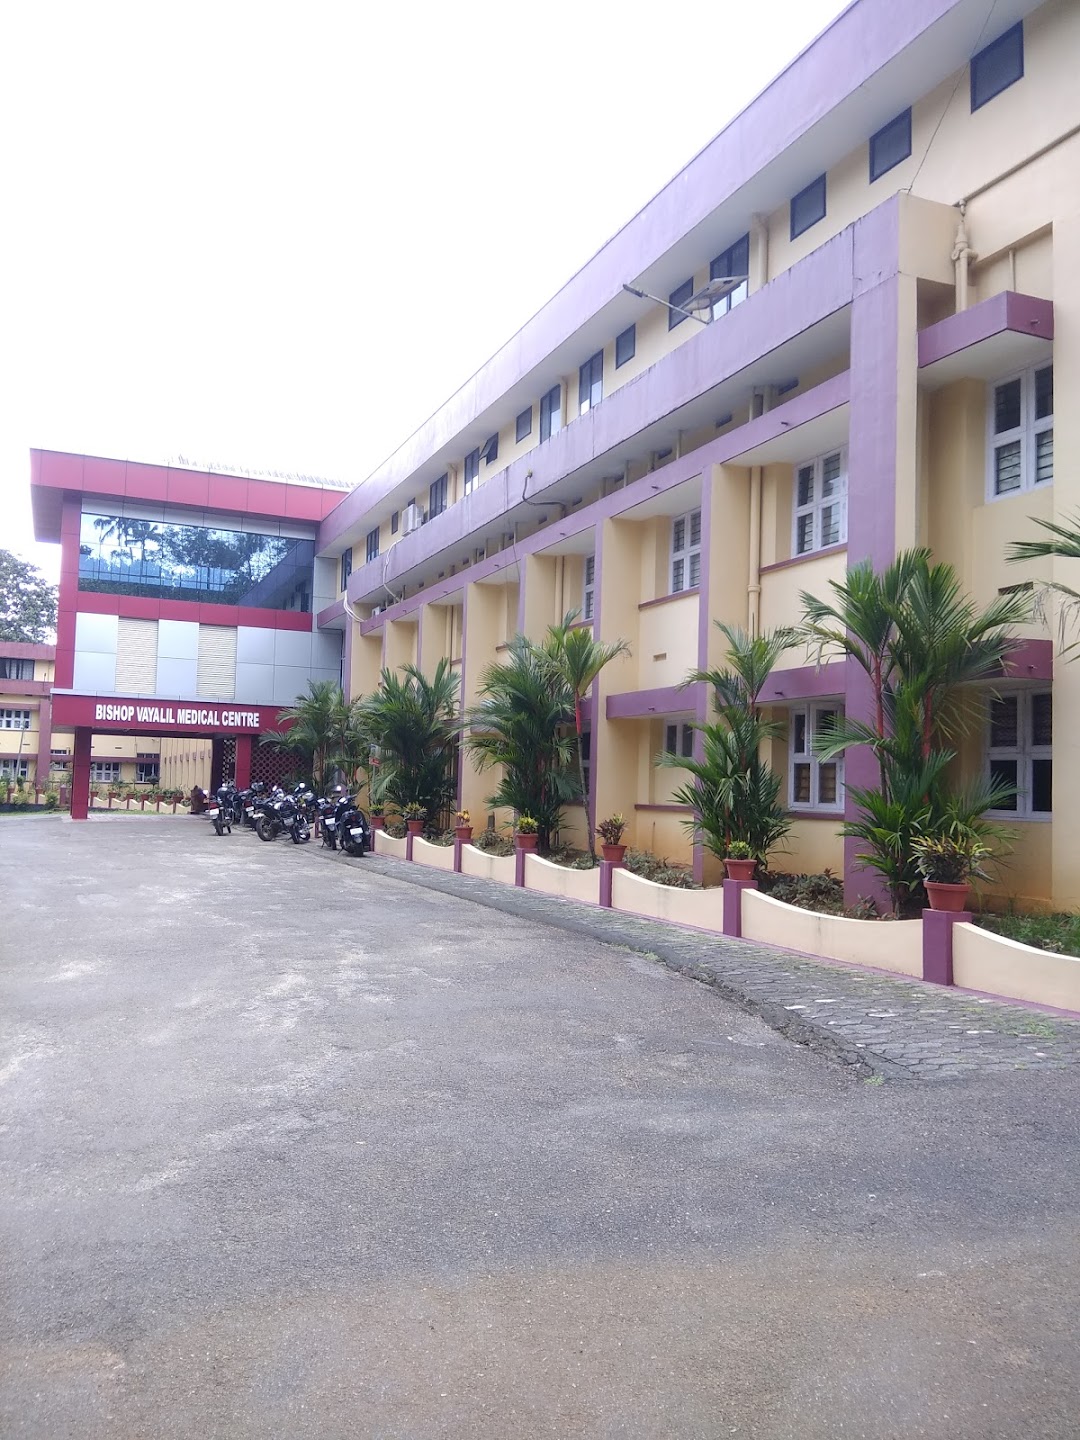 Bishop Vayalil Medical Centre